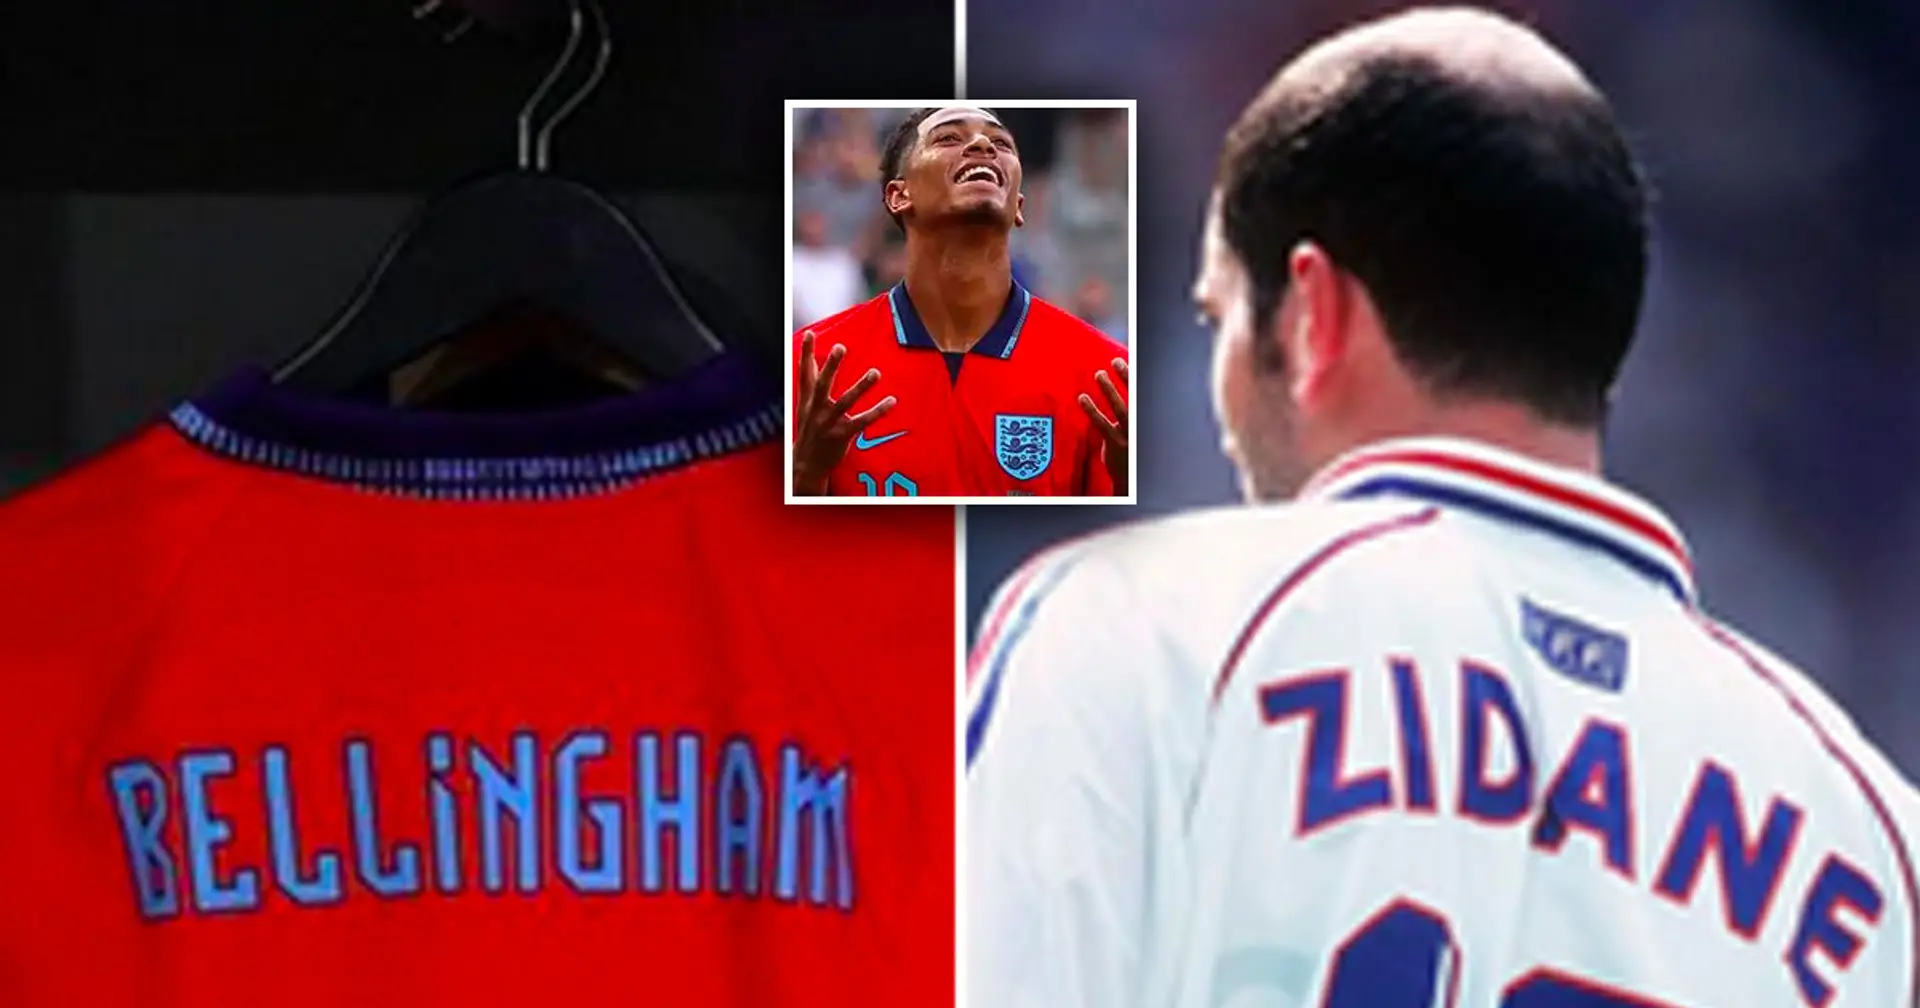 Le numéro du maillot de Bellingham avec l'Angleterre repéré – cela rend la comparaison avec Zidane encore plus pertinente